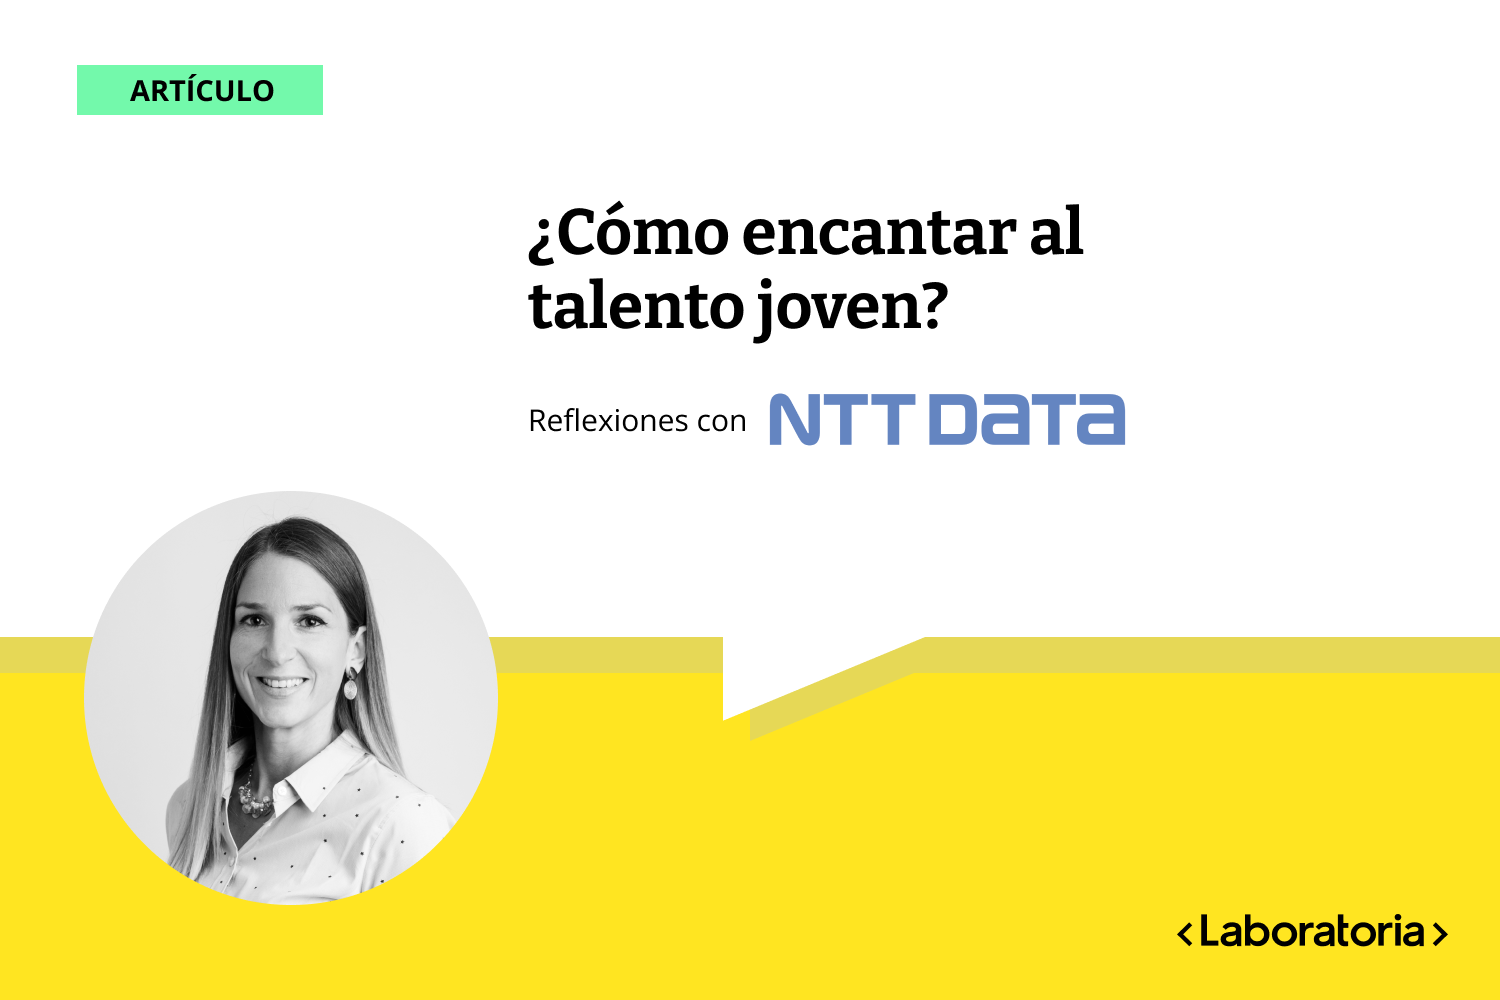 Eugenia Fuentes, Directora de People, Brand & Communications en NTT DATA Chile, comparte reflexiones sobre el reto de atraer talento joven a las empresas.